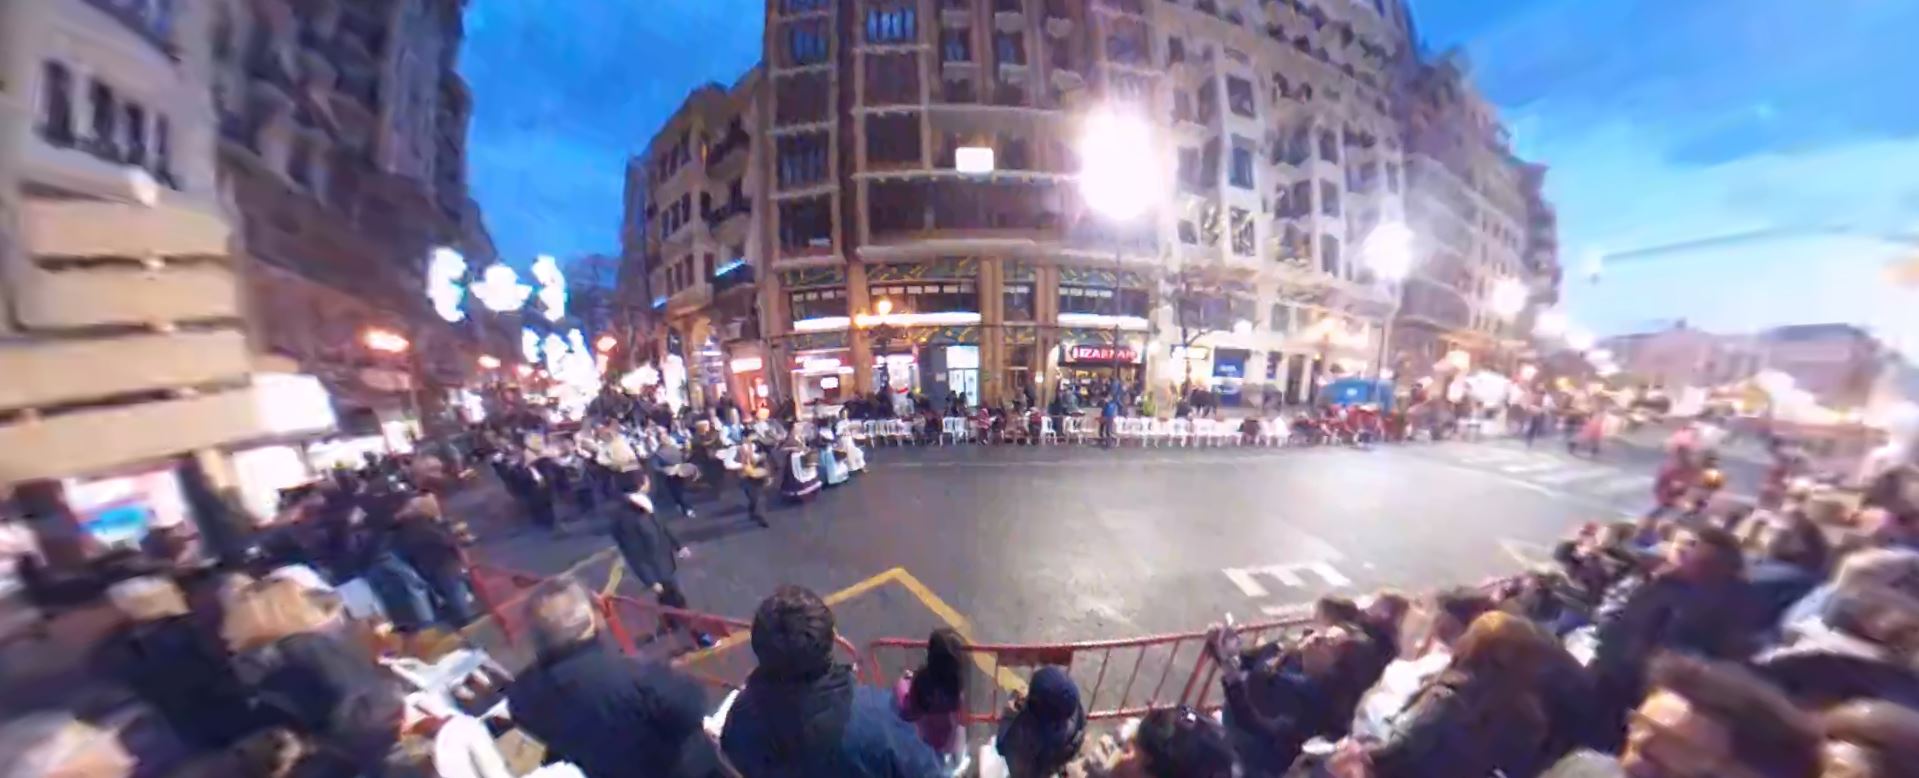 Vídeo 360 Paso de las falleras hacia el ayuntamiento. #VidePan por #Valencia